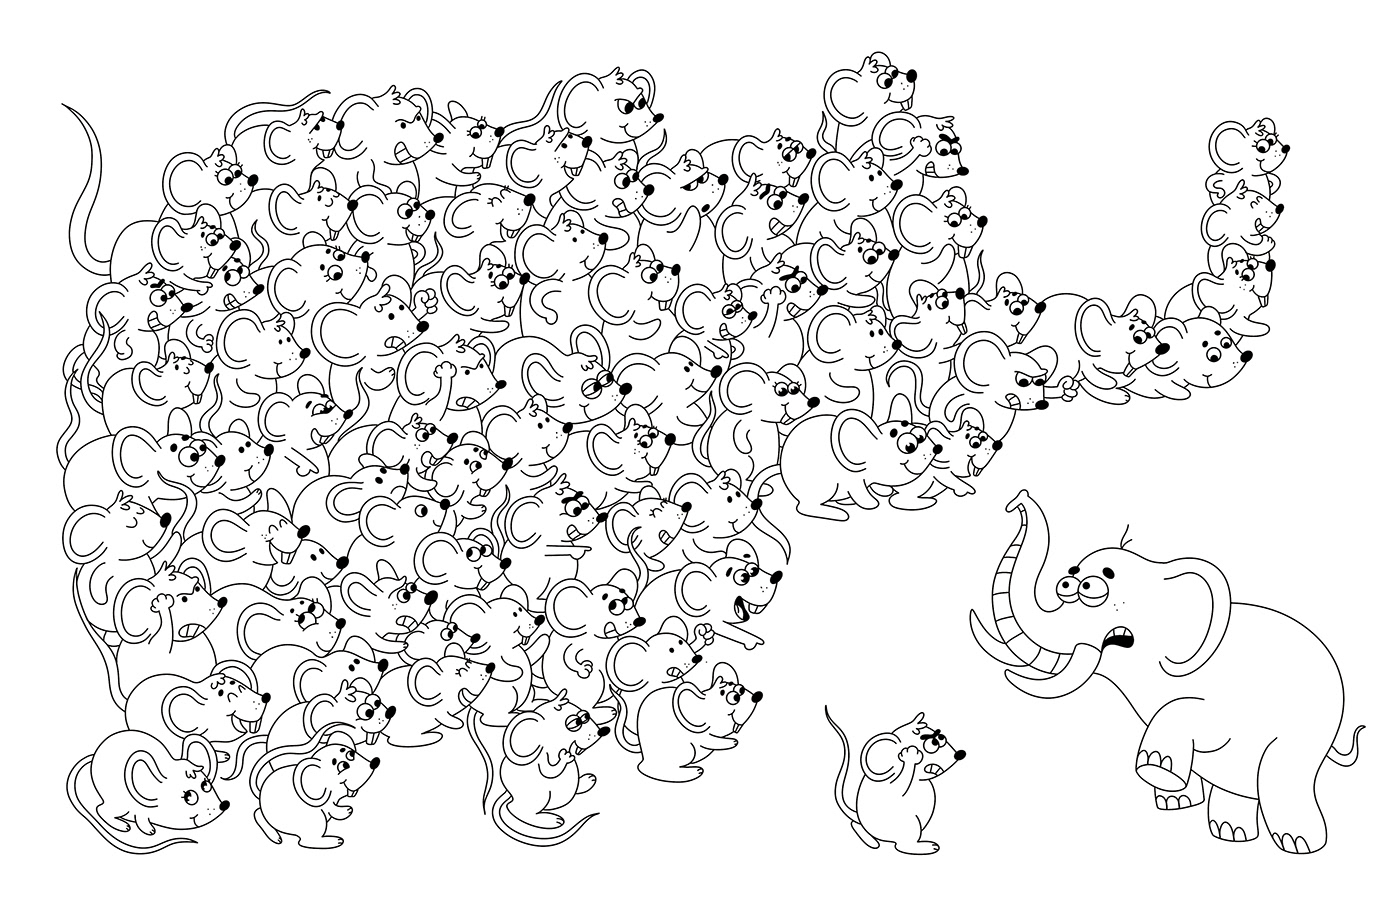 animals illustration cartoon Character design  coloring book digital illustration doodle children illustration doodles sketch